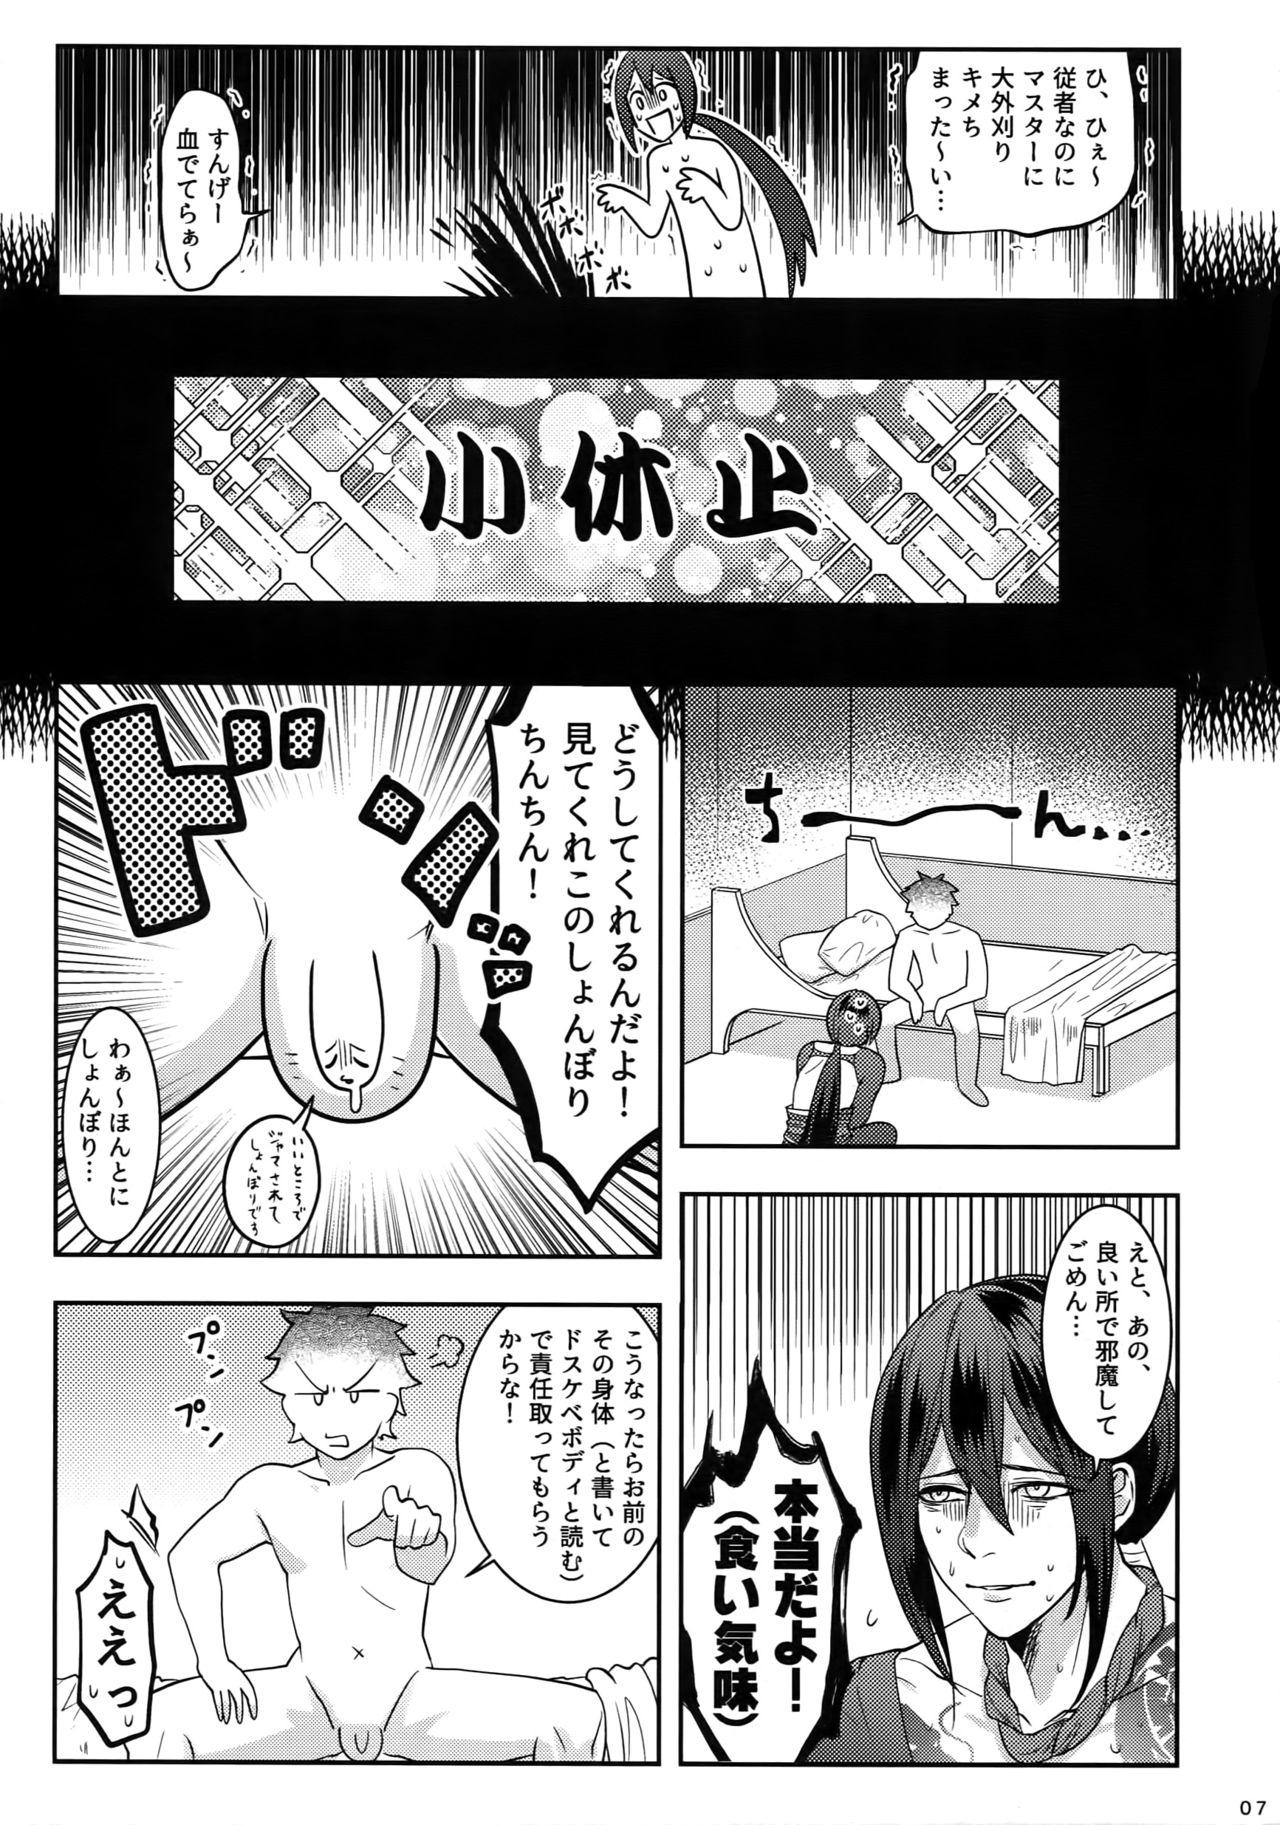 Bigcock Reiju no Mudazukai! Yarasete Kure Shinjuku no Assassin! - Fate grand order Scene - Page 6